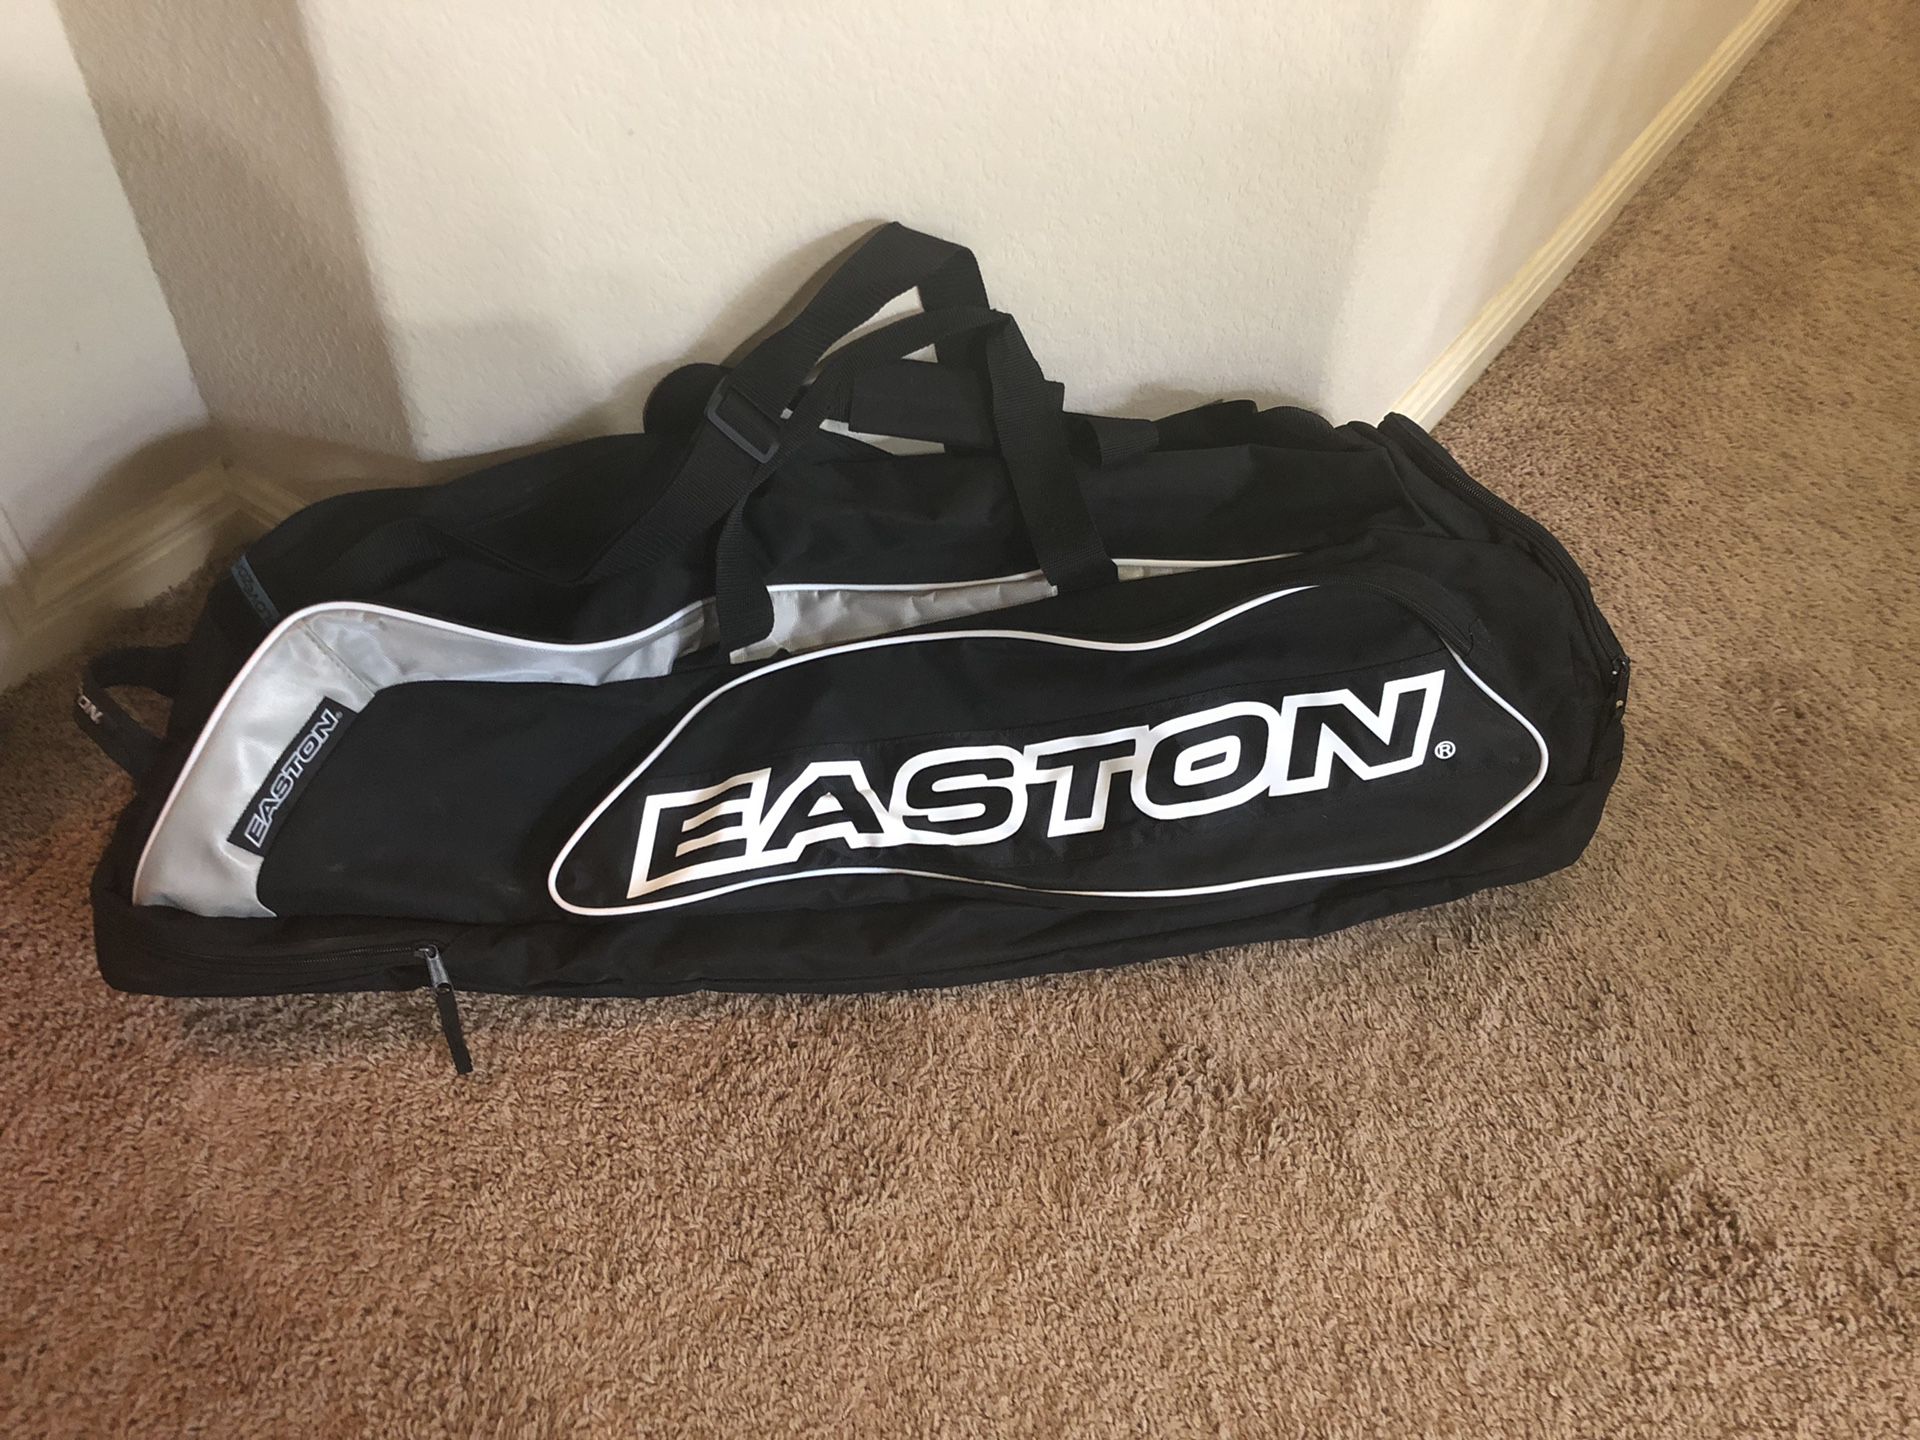 Easton Baseball Equipment Bag - Black